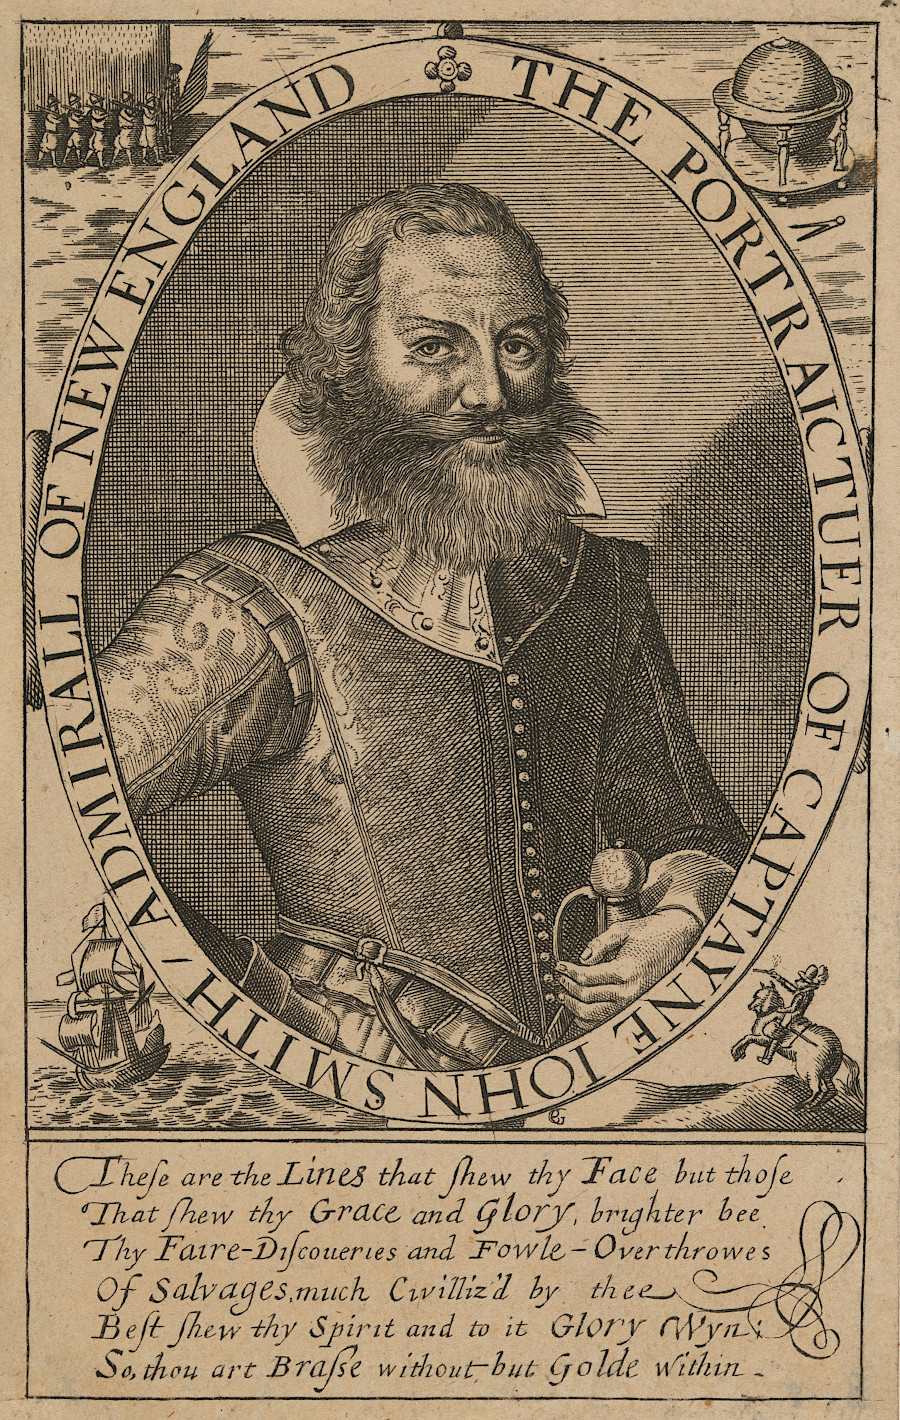 John Smith was in Virginia between 1607-1609